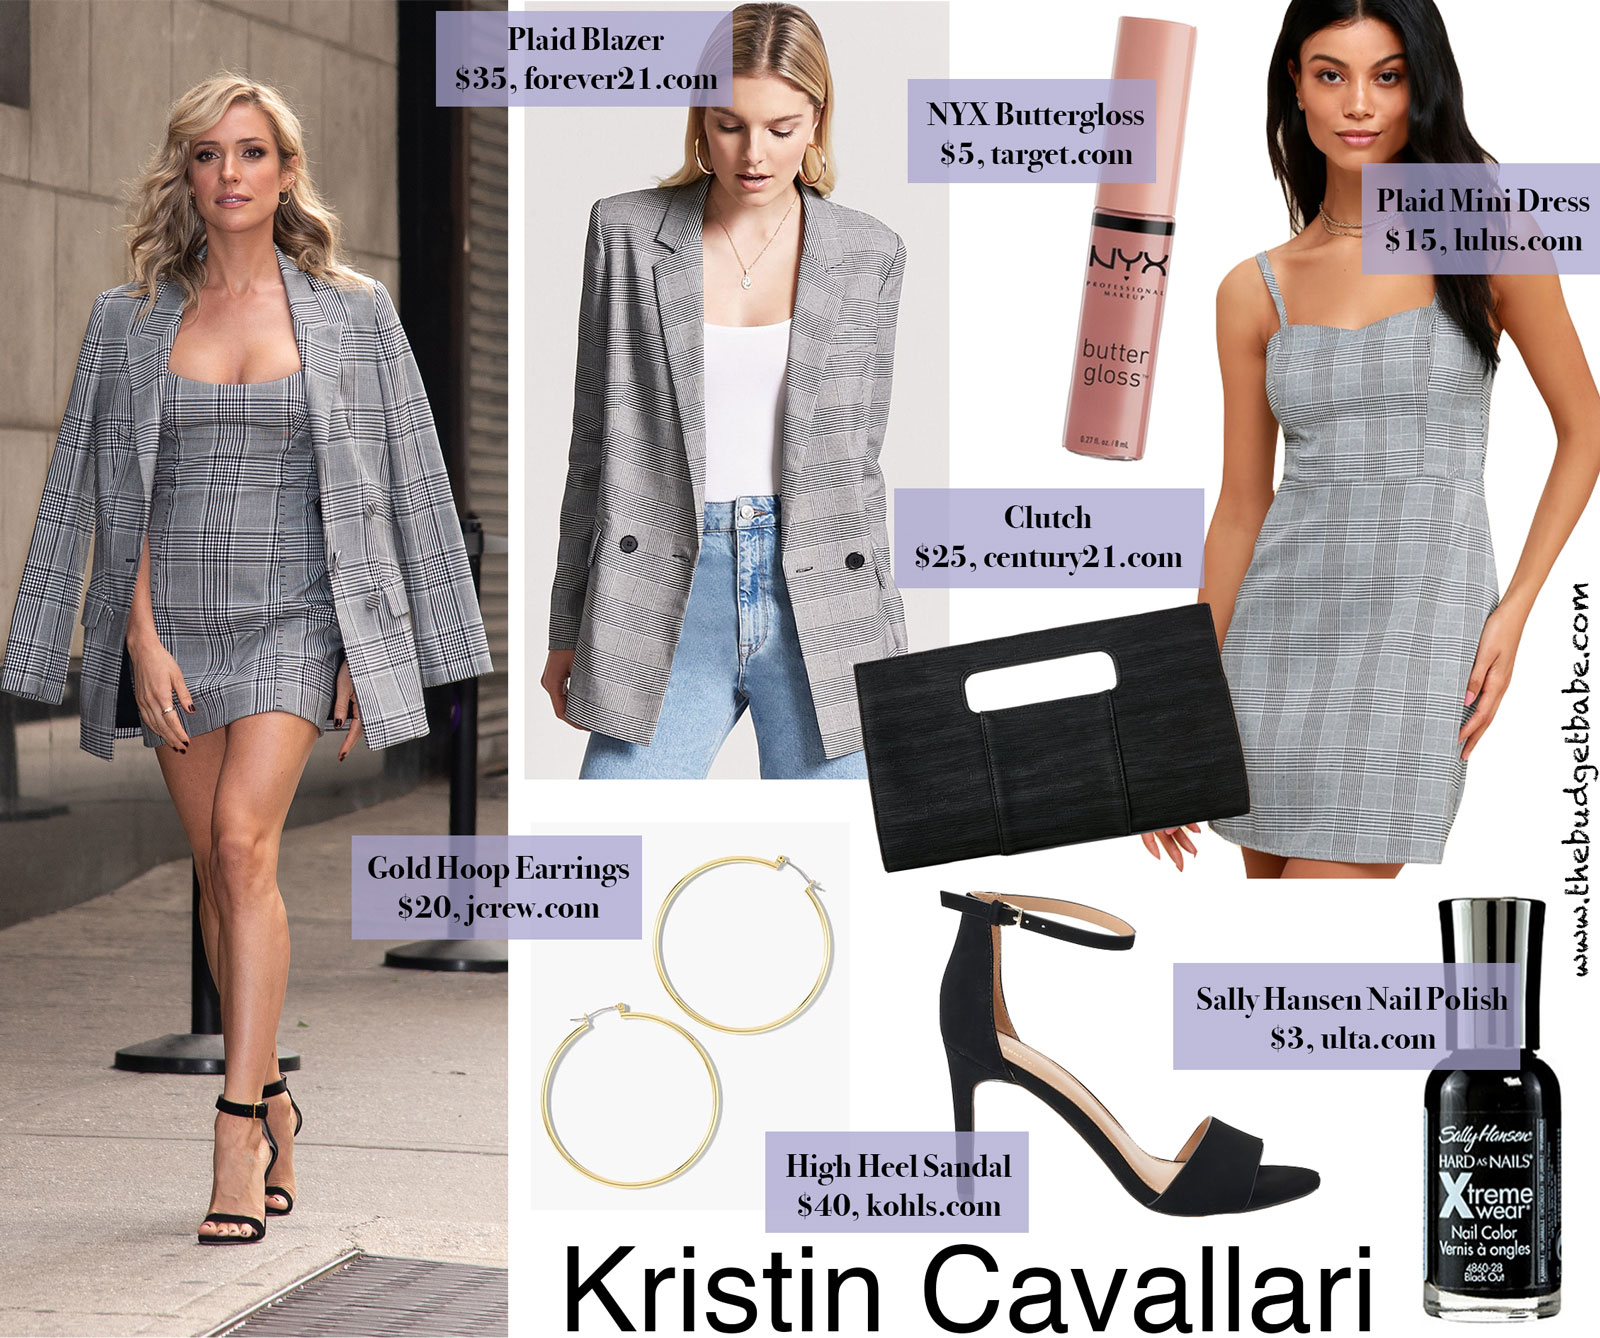 Kristin Cavallari Plaid Mini Dress Look for Less